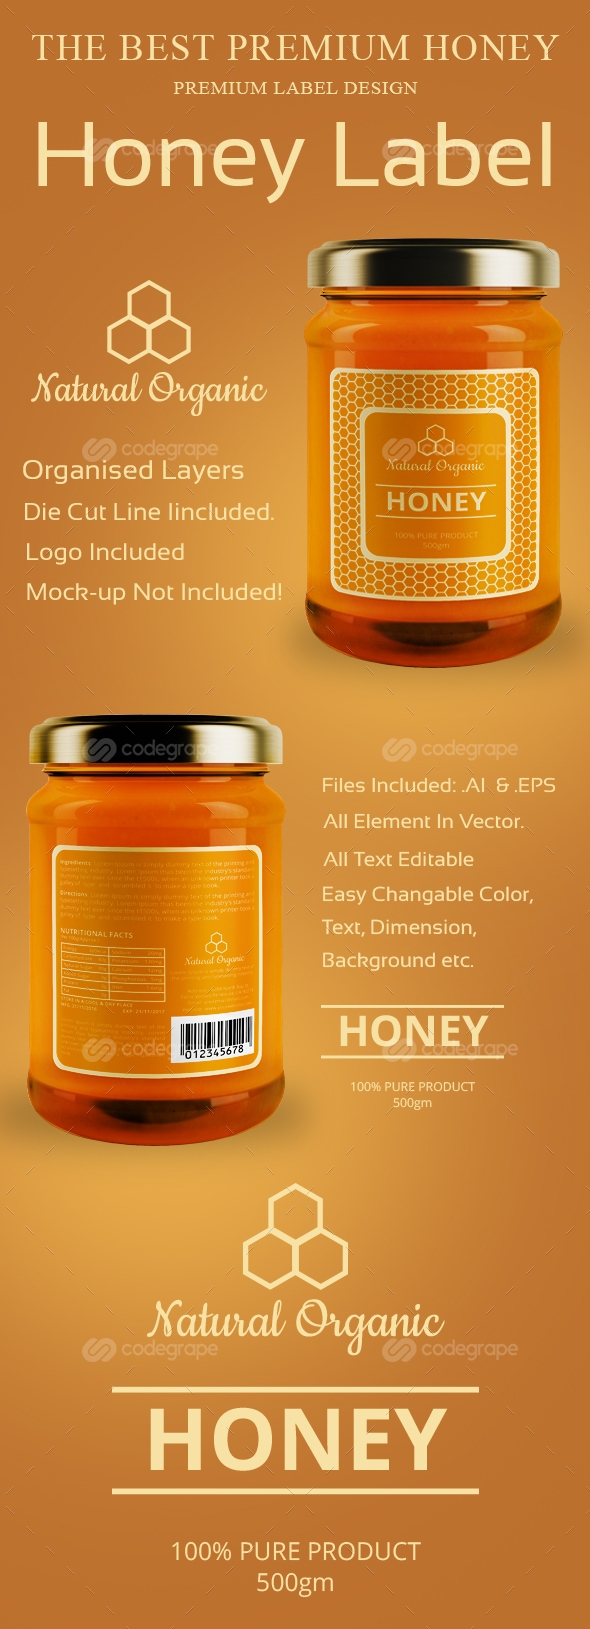 Honey Label Design Templates